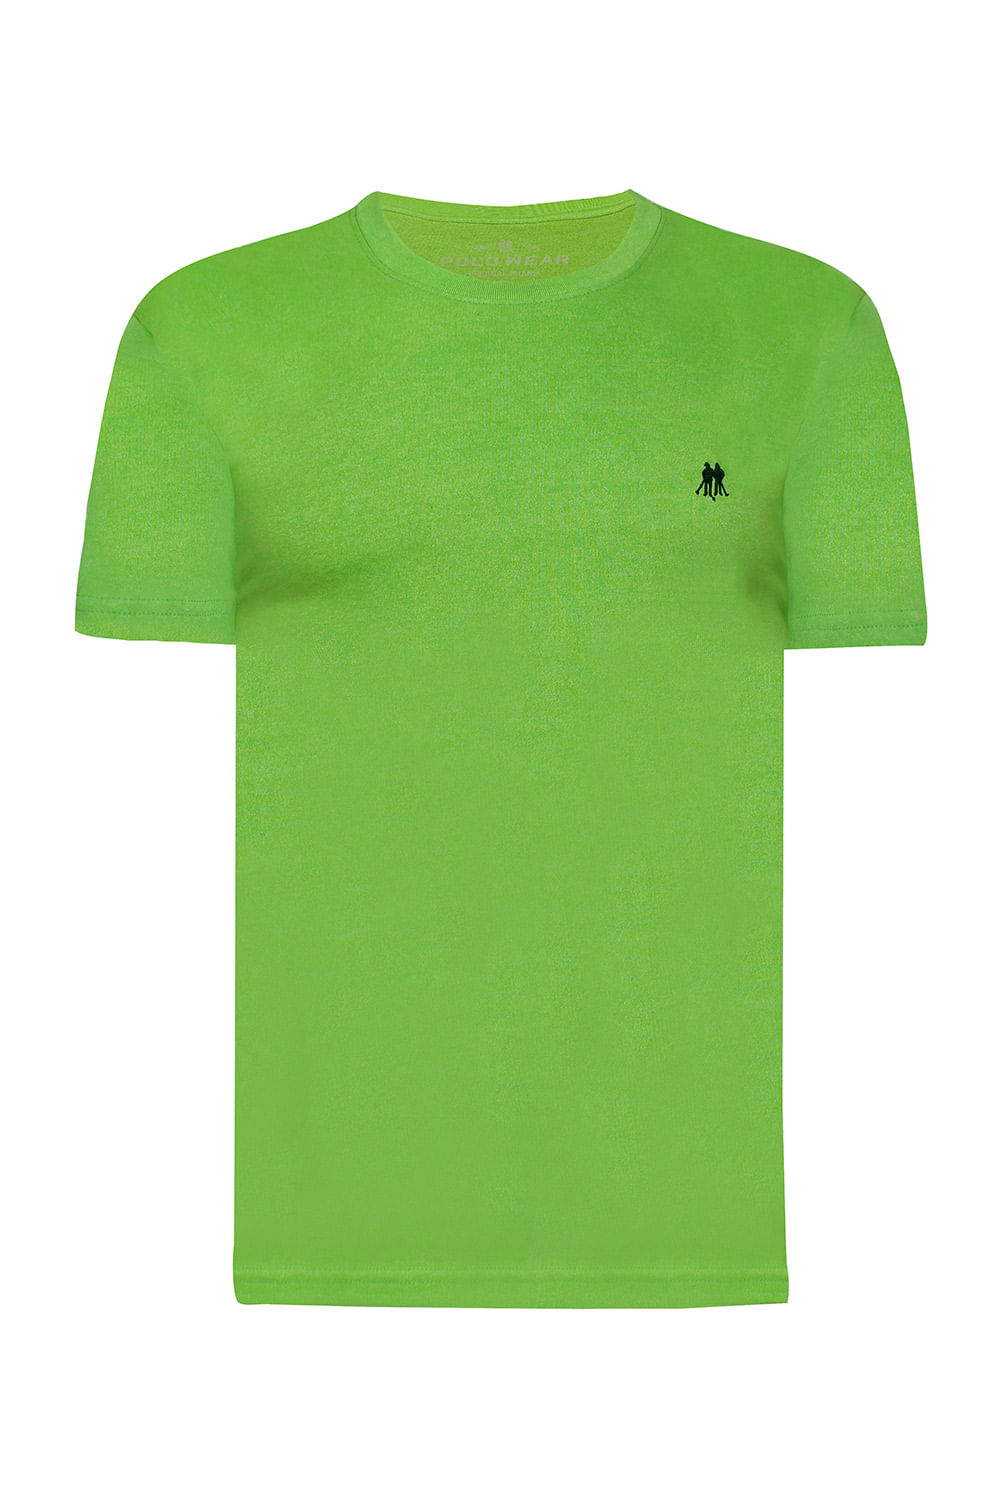 Kit 5 Camisetas Masculinas Básicas Algodão Polo Wear Sortido